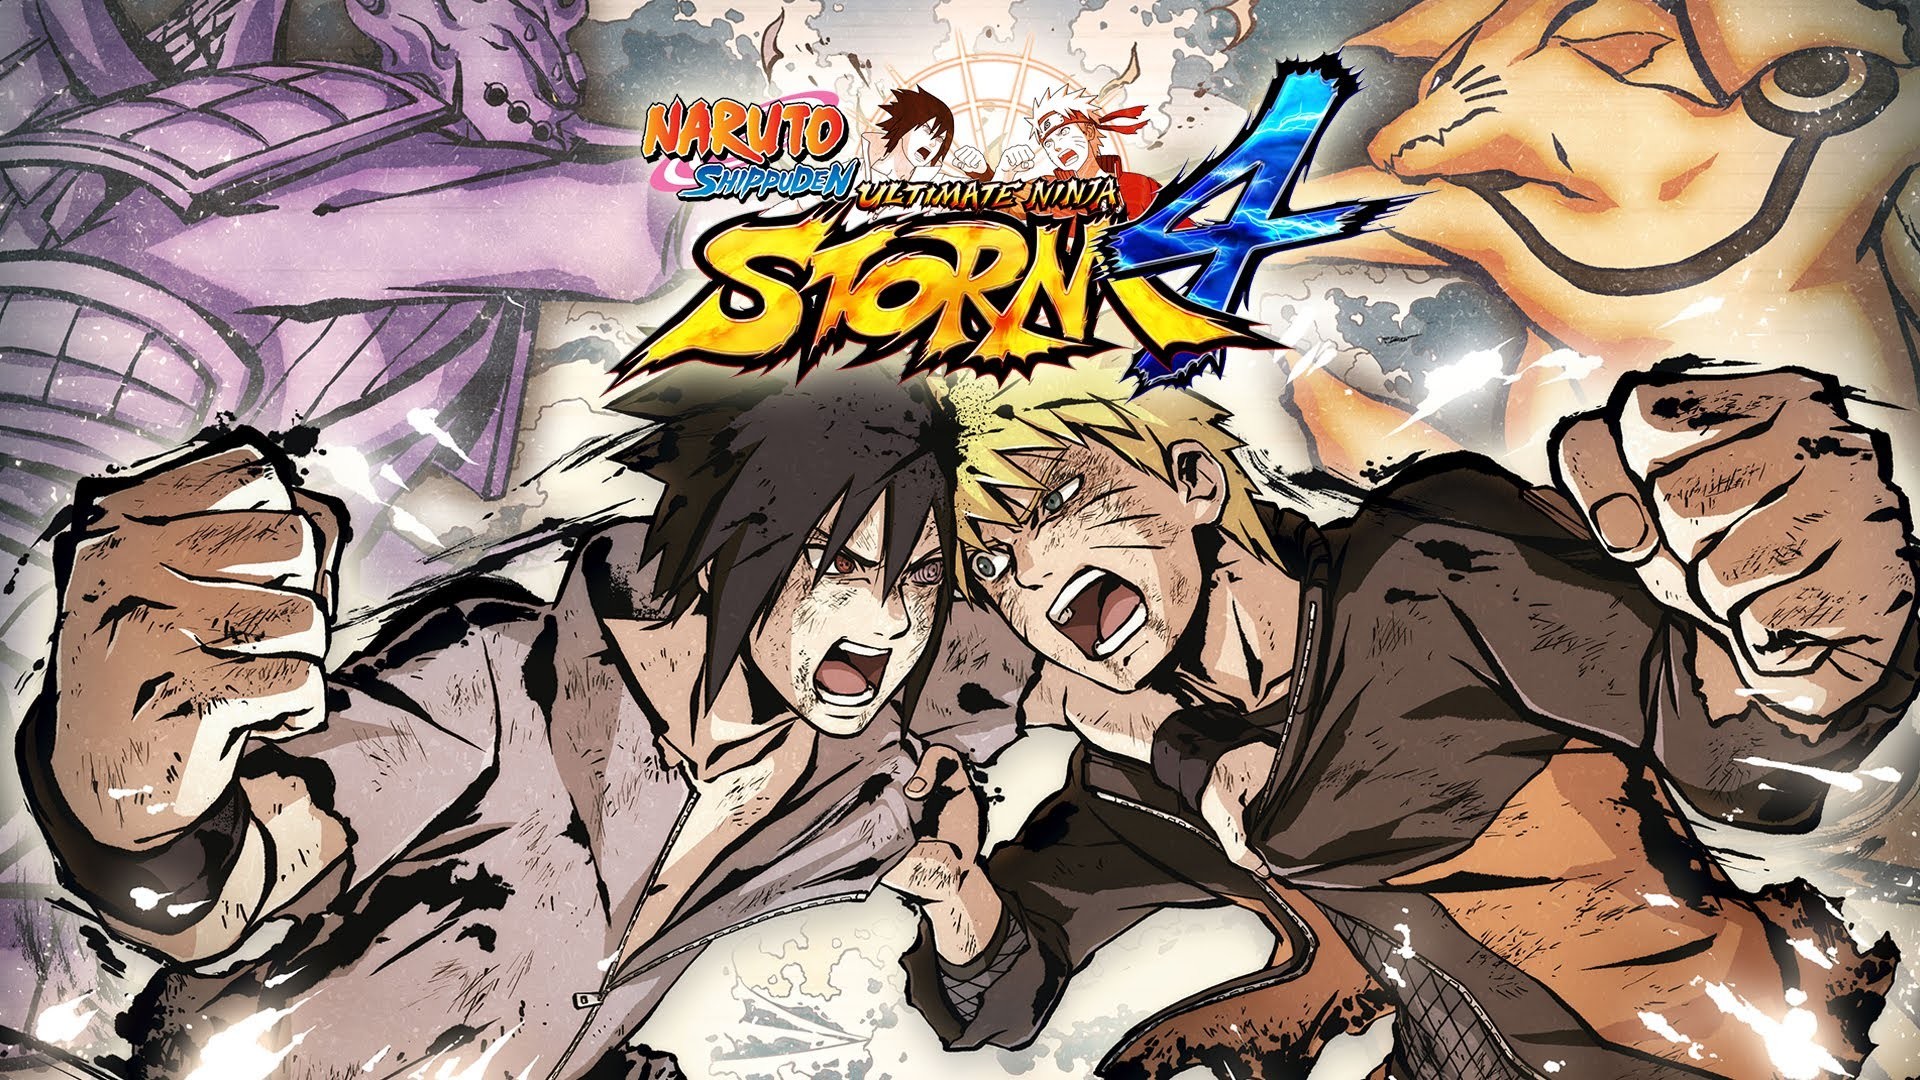 Naruto Vs Sasuke Wallpaper Hd - Naruto Storm 4 Hd - HD Wallpaper 